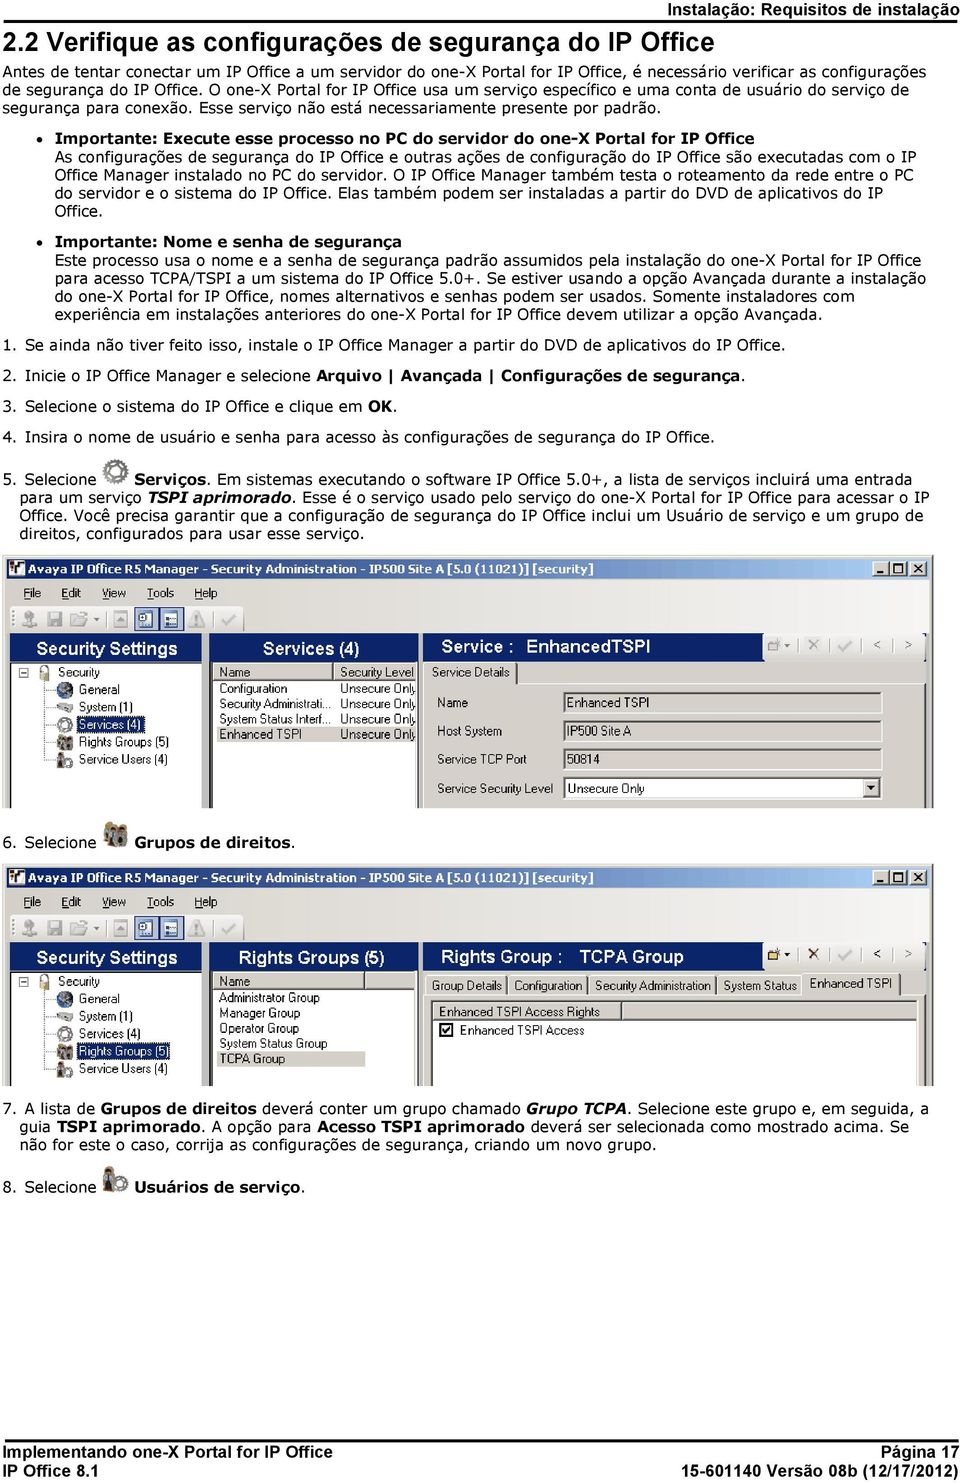 Office. O one-x Portal for IP Office usa um serviço específico e uma conta de usuário do serviço de segurança para conexão. Esse serviço não está necessariamente presente por padrão.